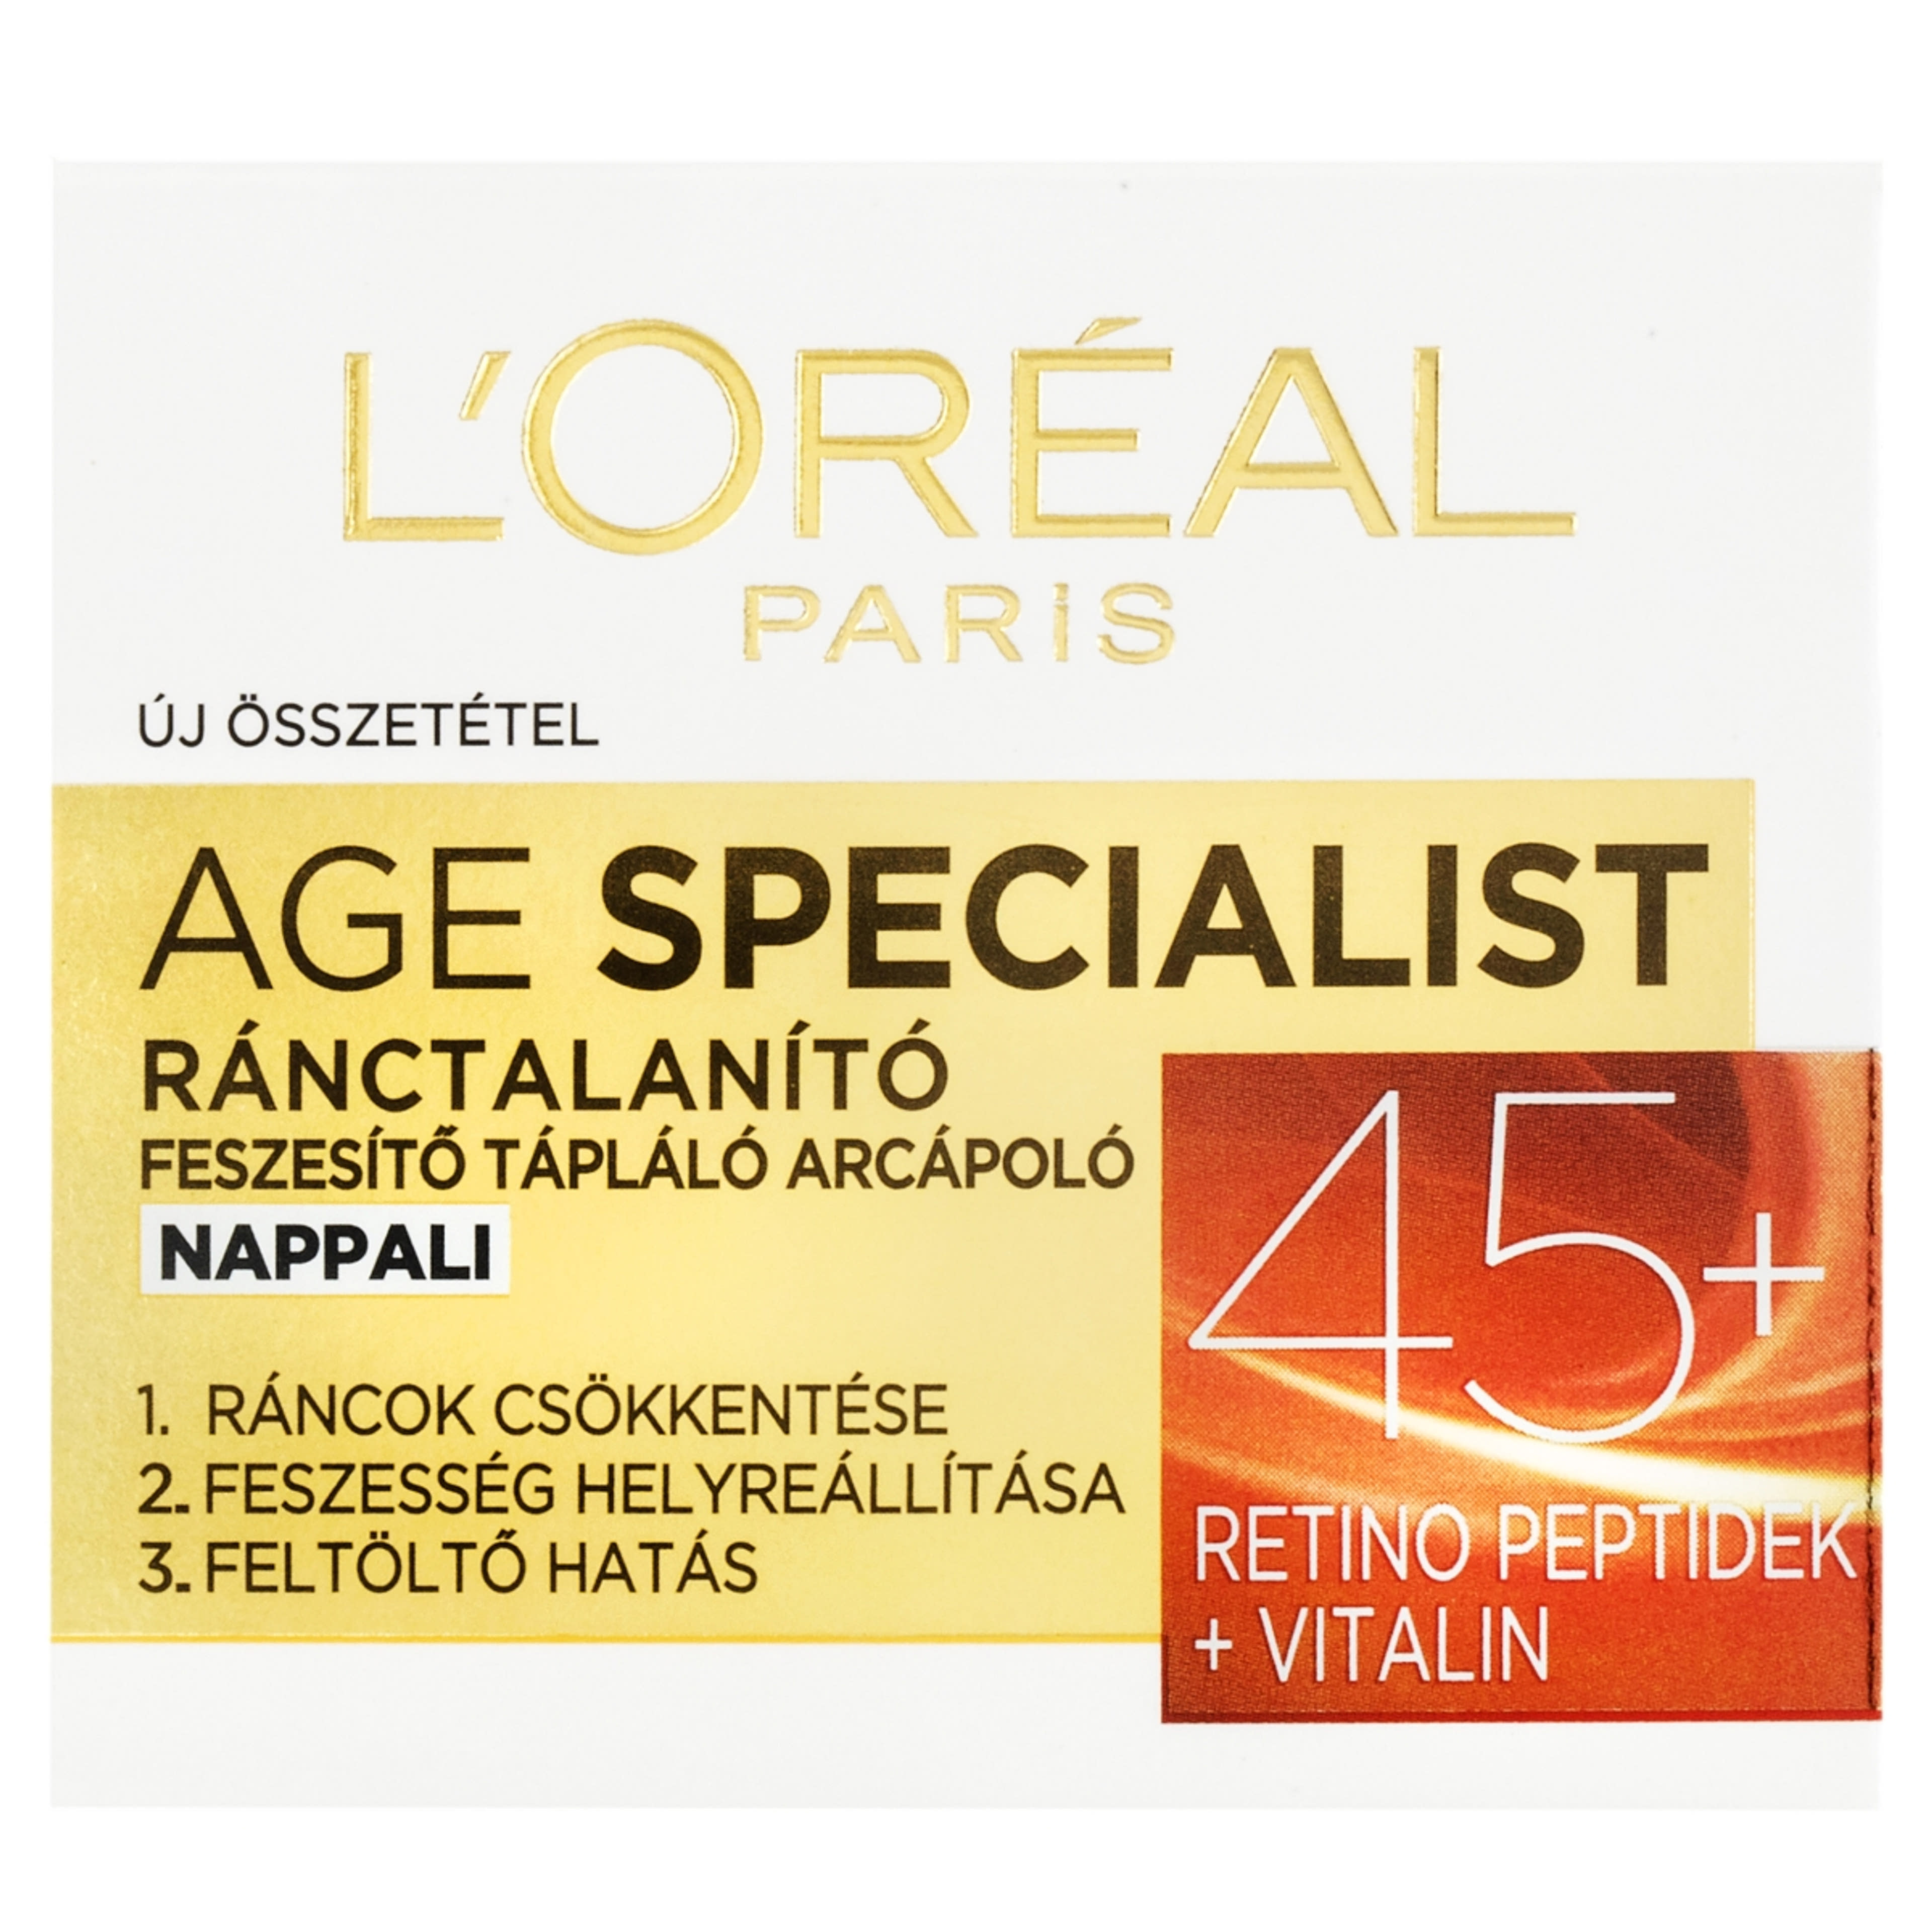 L'Oréal Paris Age Specialist nappali arckrém 45+  - 50 ml-1